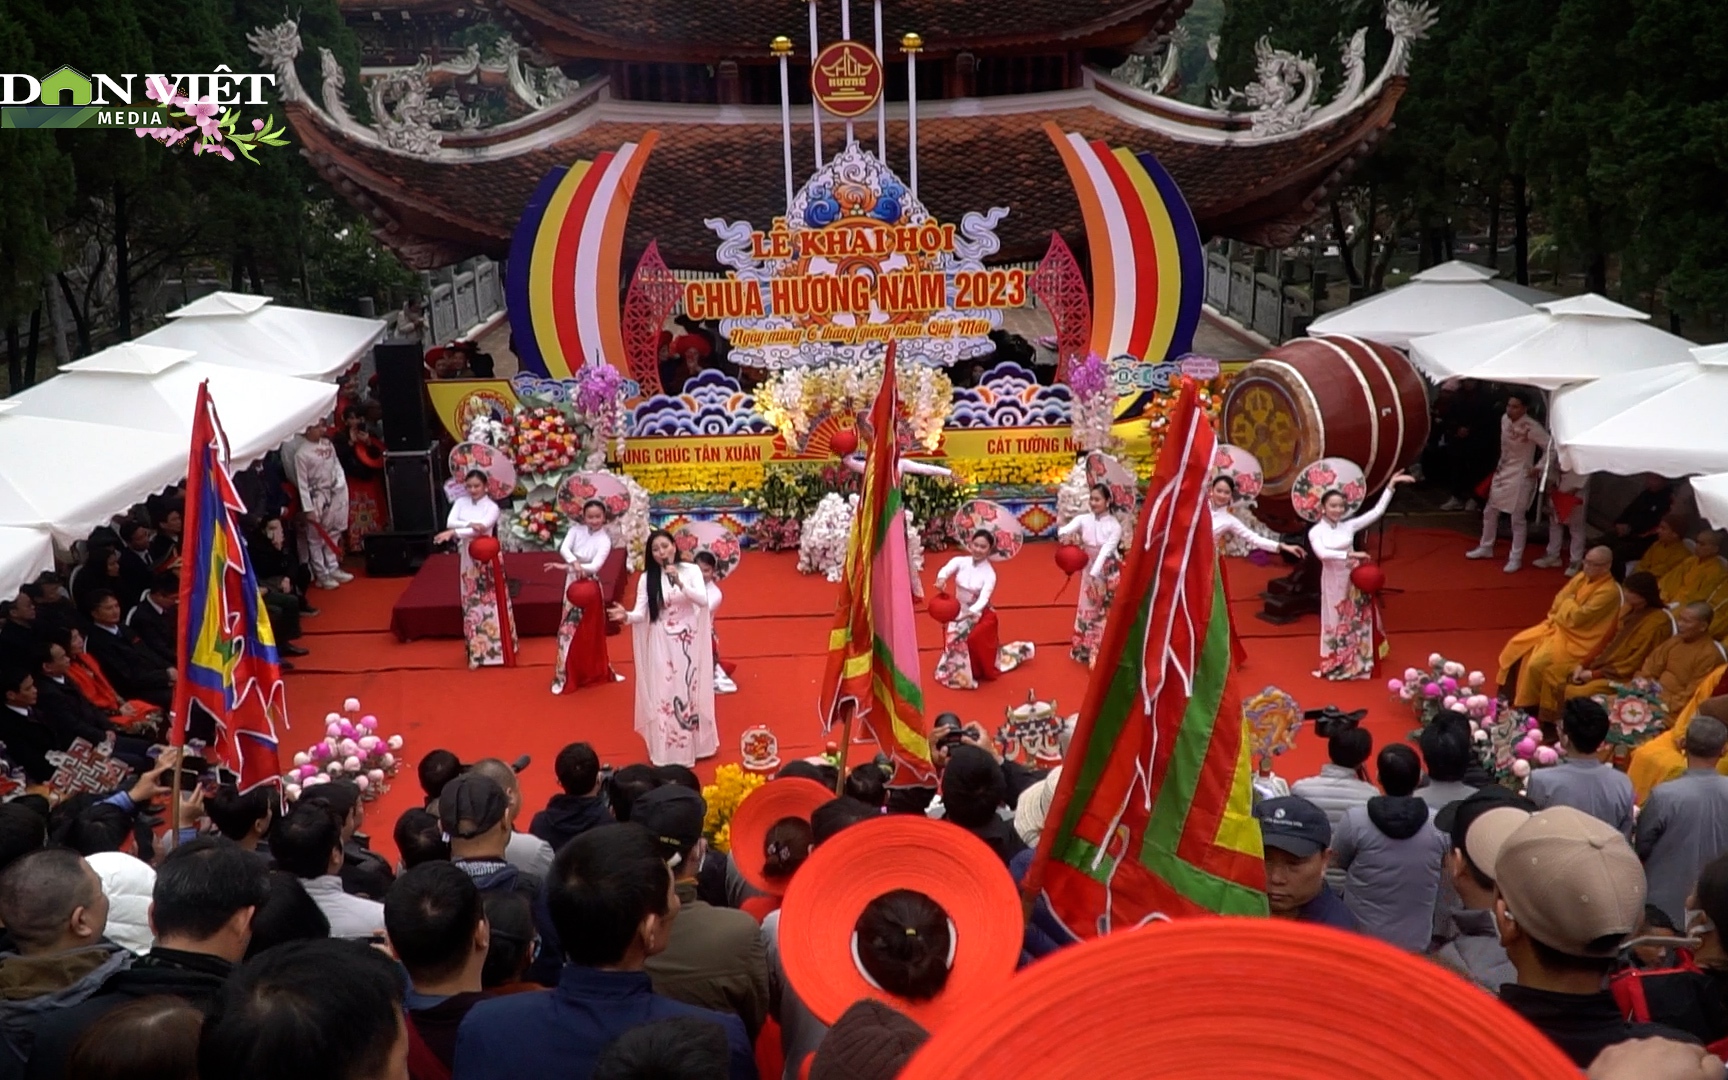 Khai hội chùa Hương 2023 nhộn nhịp với nhiều điểm mới, đặc sắc 